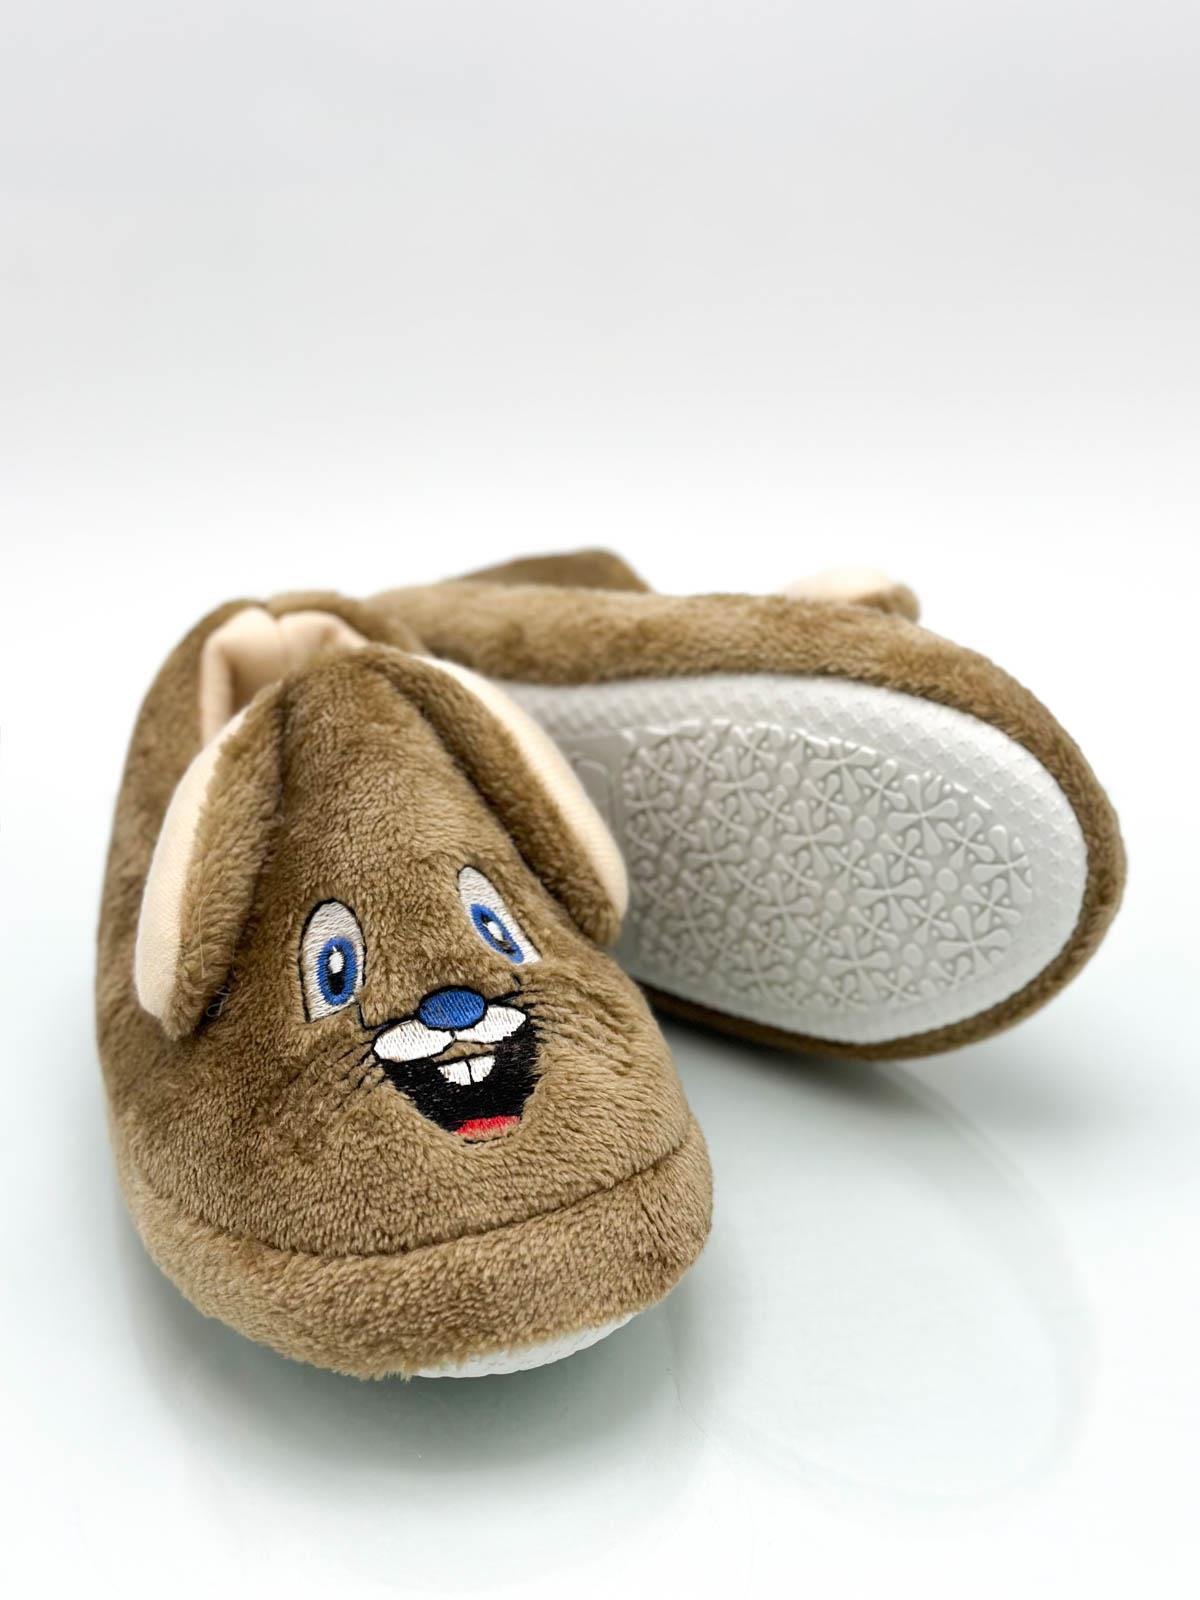 Sermoda Tavşan Figürlü Bebek ve Çocuk Ev Ayakkabısı Panduf Vizon